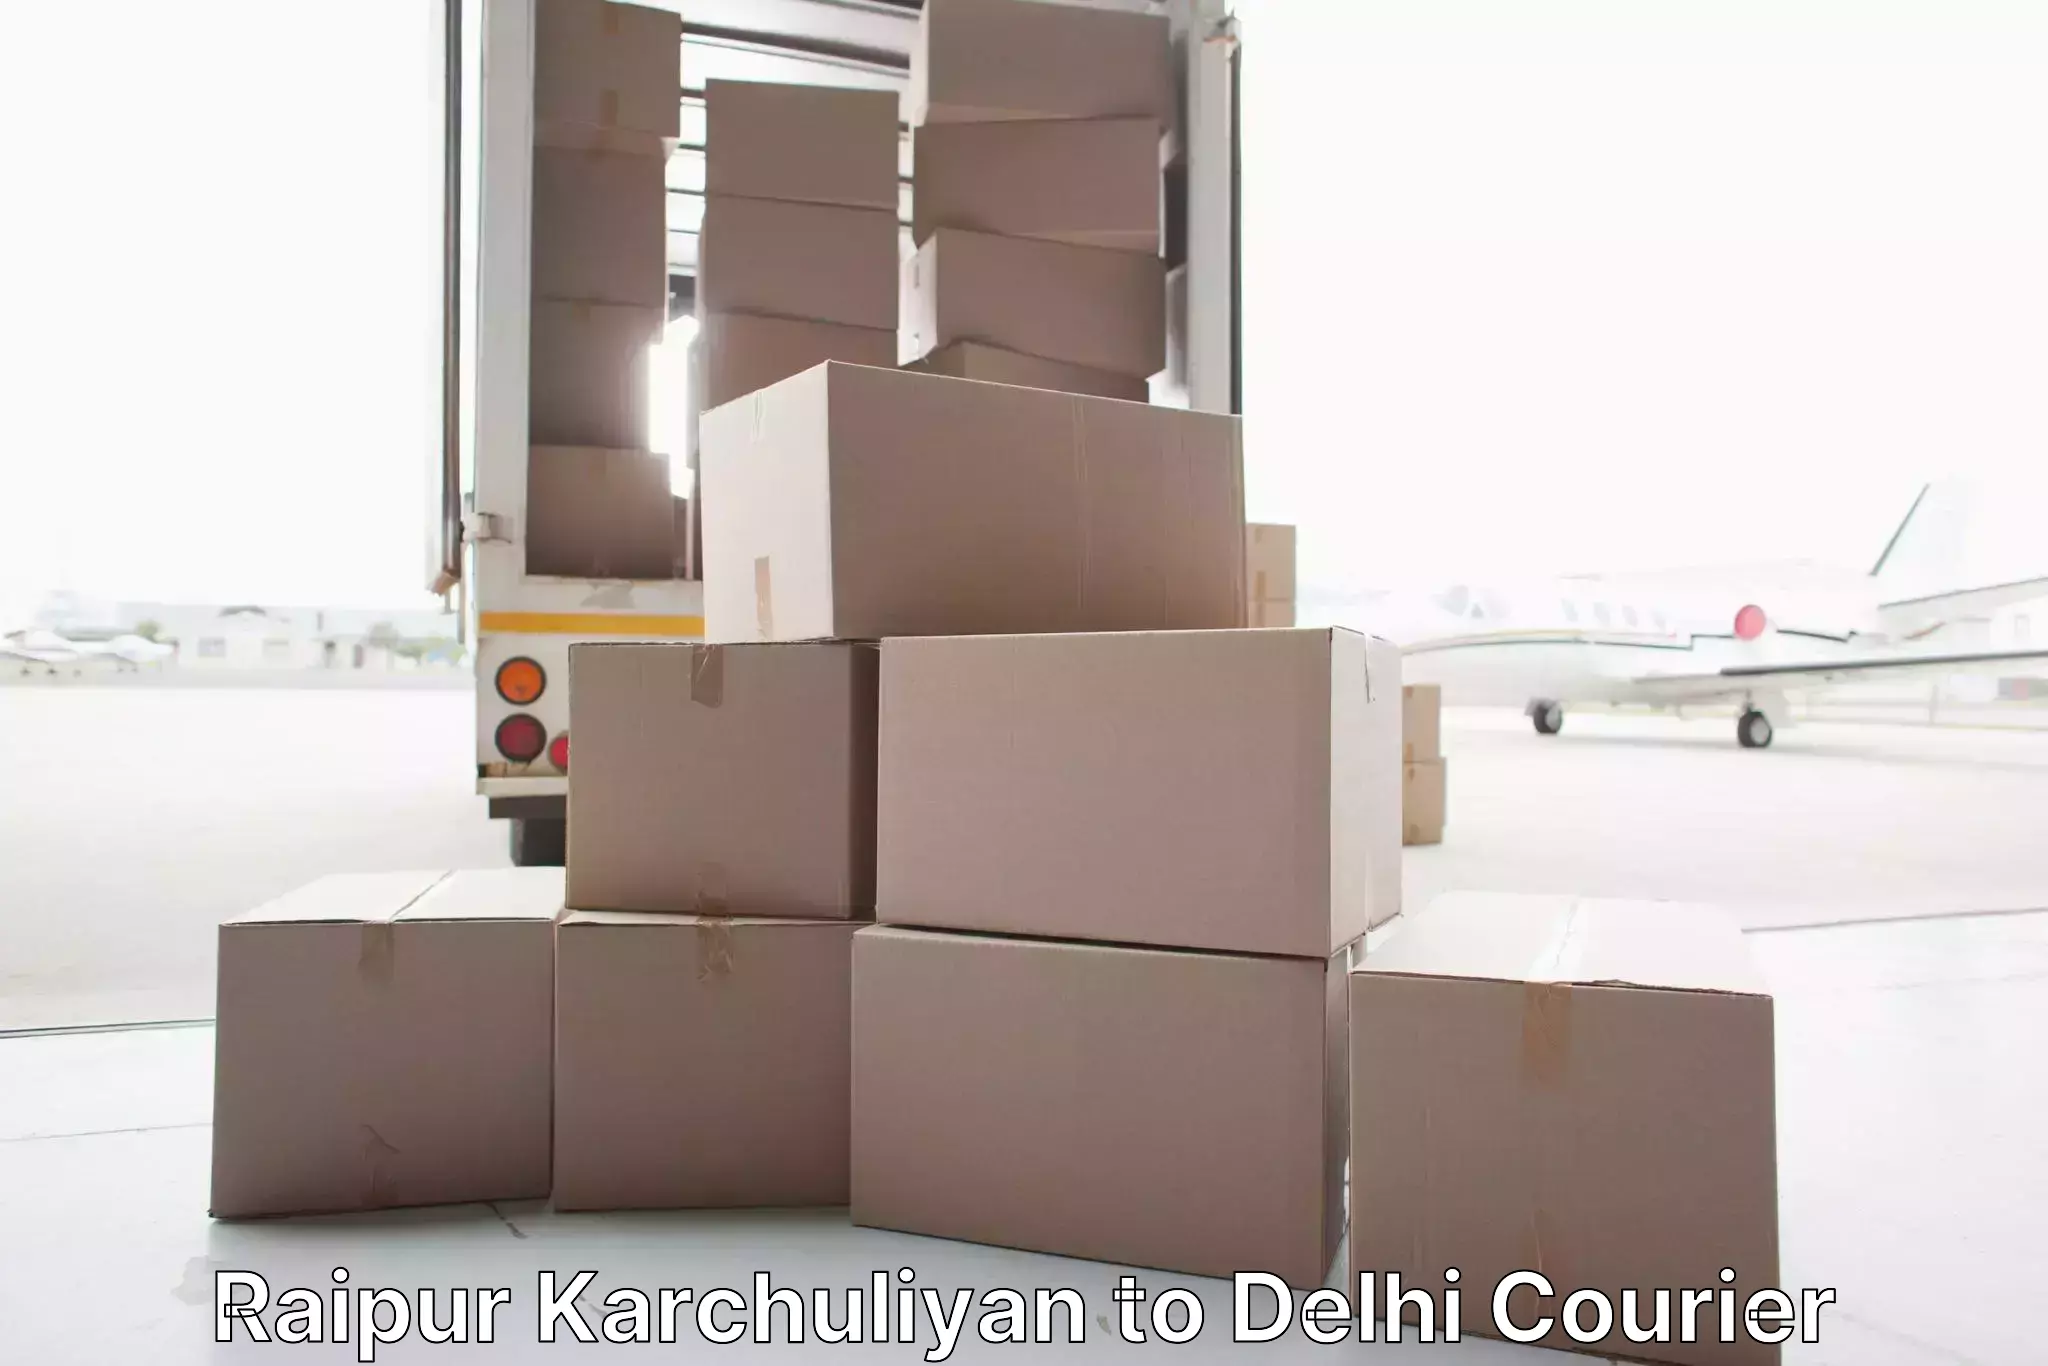 Furniture moving experts Raipur Karchuliyan to Kalkaji